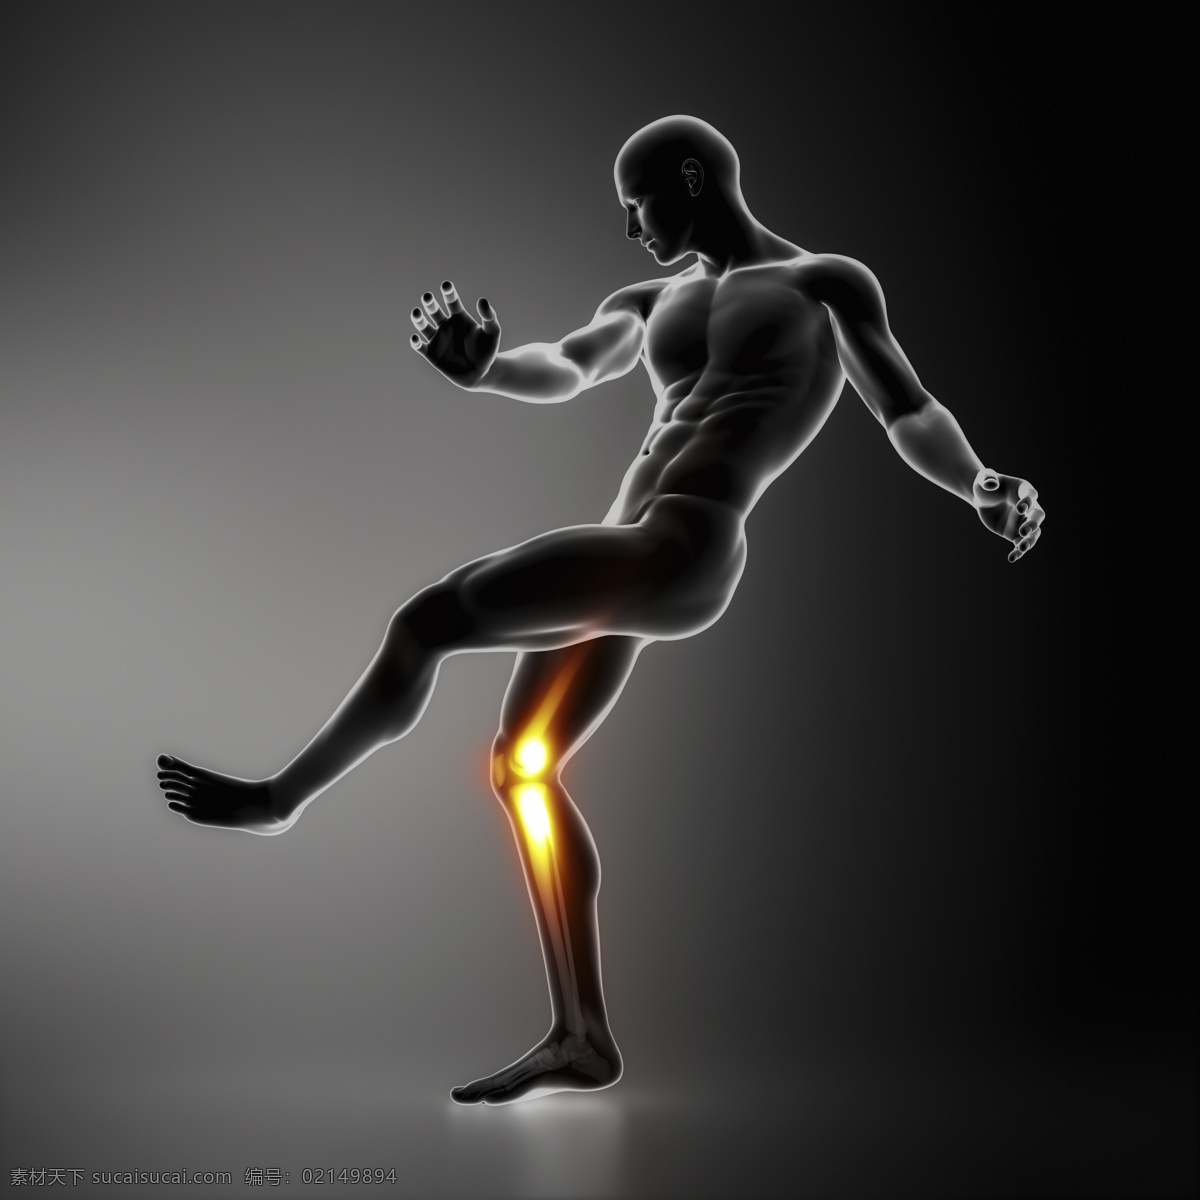 男性 人体 膝关节 器官 男性人体器官 医疗科学 医学 人体器官图 人物图片